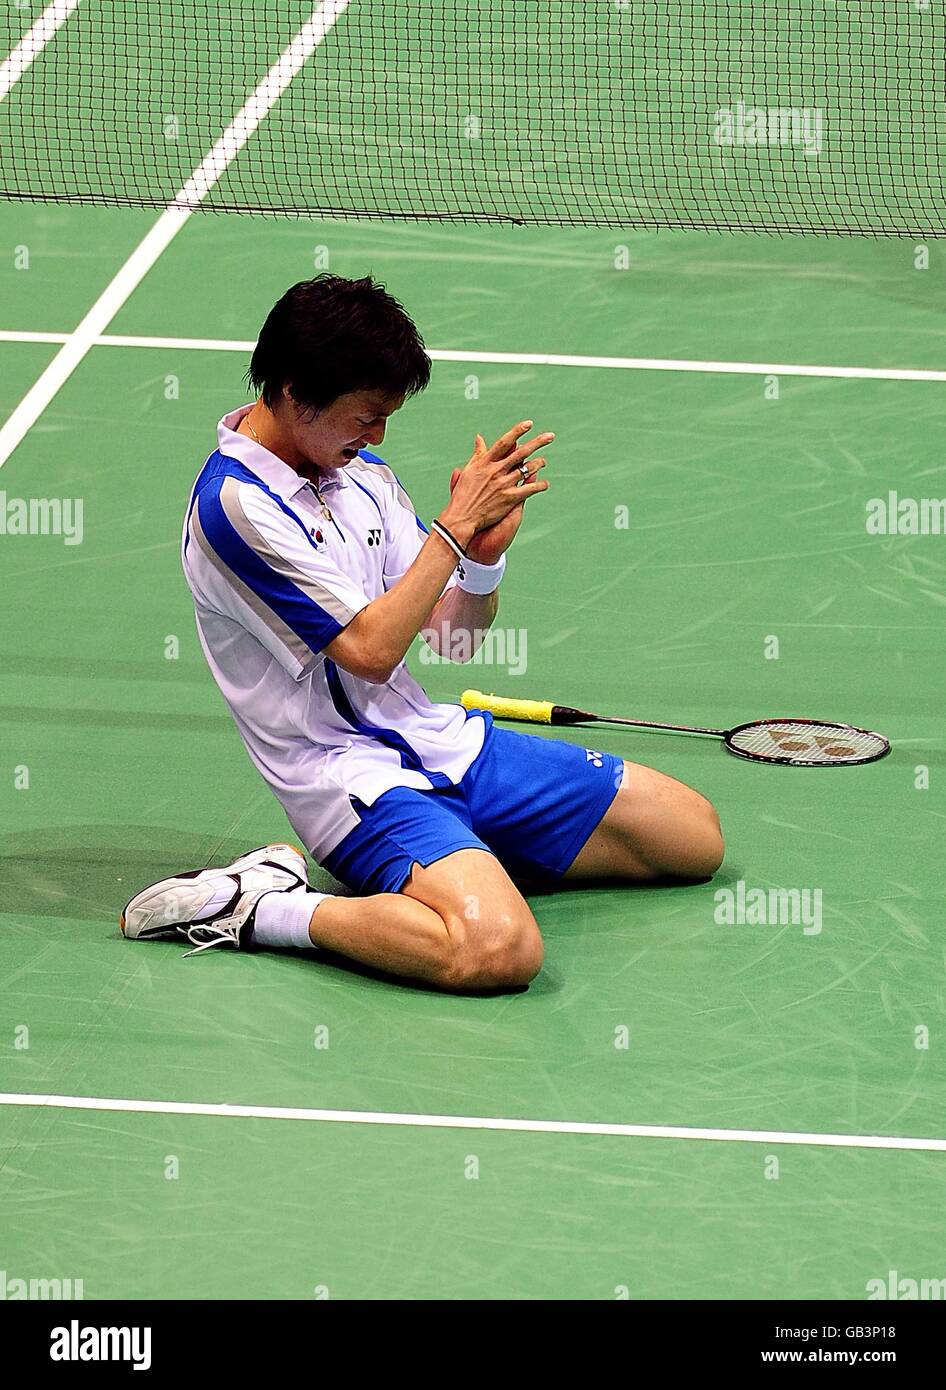 Il Lee Hyunil della Corea celebra dopo aver battuto il Boa Chunlai della Cina nei quarti di finale maschile di badminton singles presso la palestra dell'Università di tecnologia di Pechino durante i Giochi Olimpici del 2008 a Pechino, Cina. Hyunil ha vinto la partita 2-0. Foto Stock